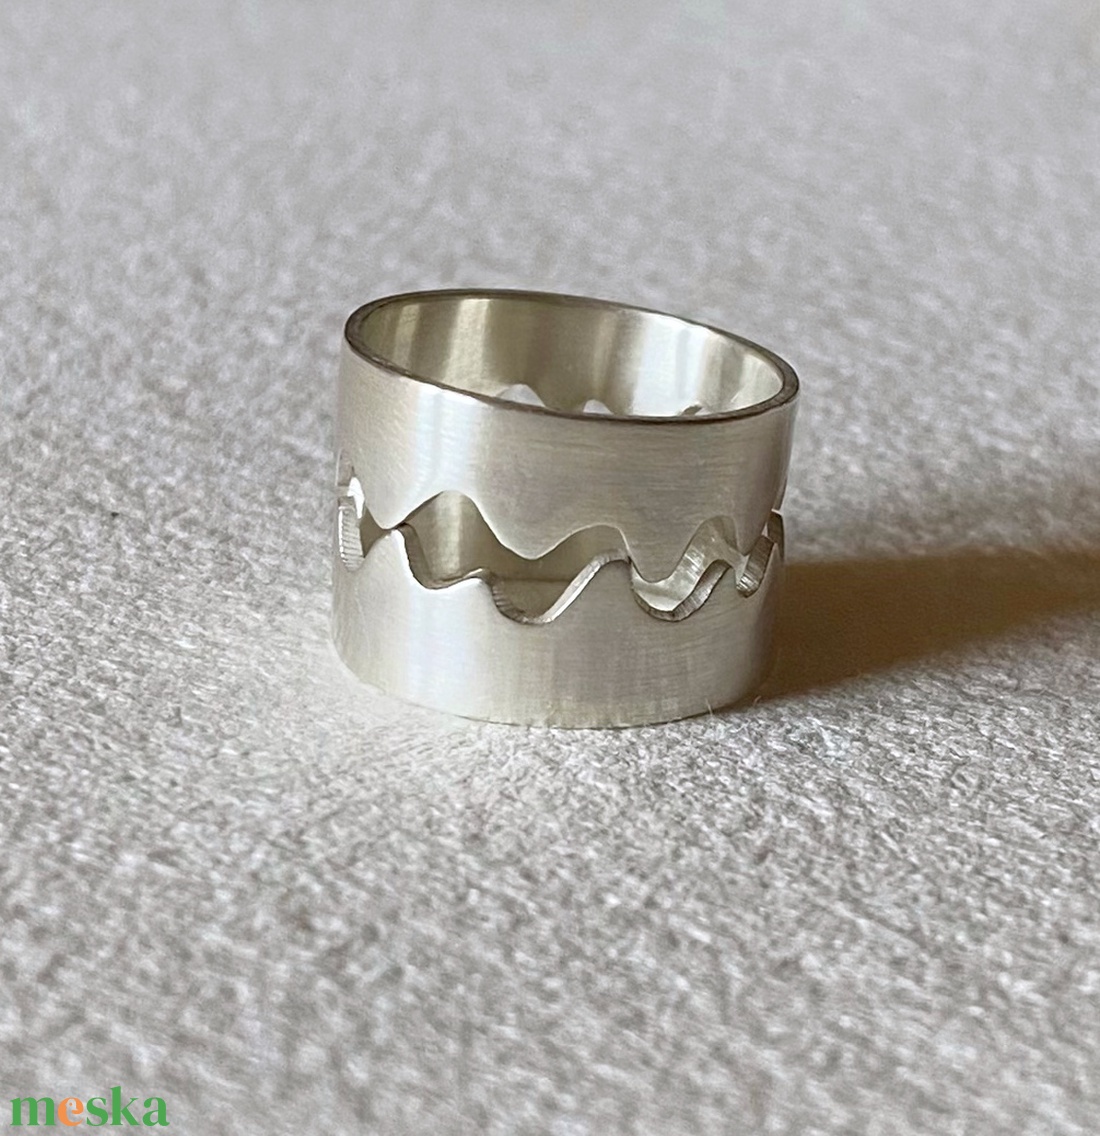 Ezüst gyűrű 2 in 1 - ékszer - gyűrű - kerek gyűrű - Meska.hu